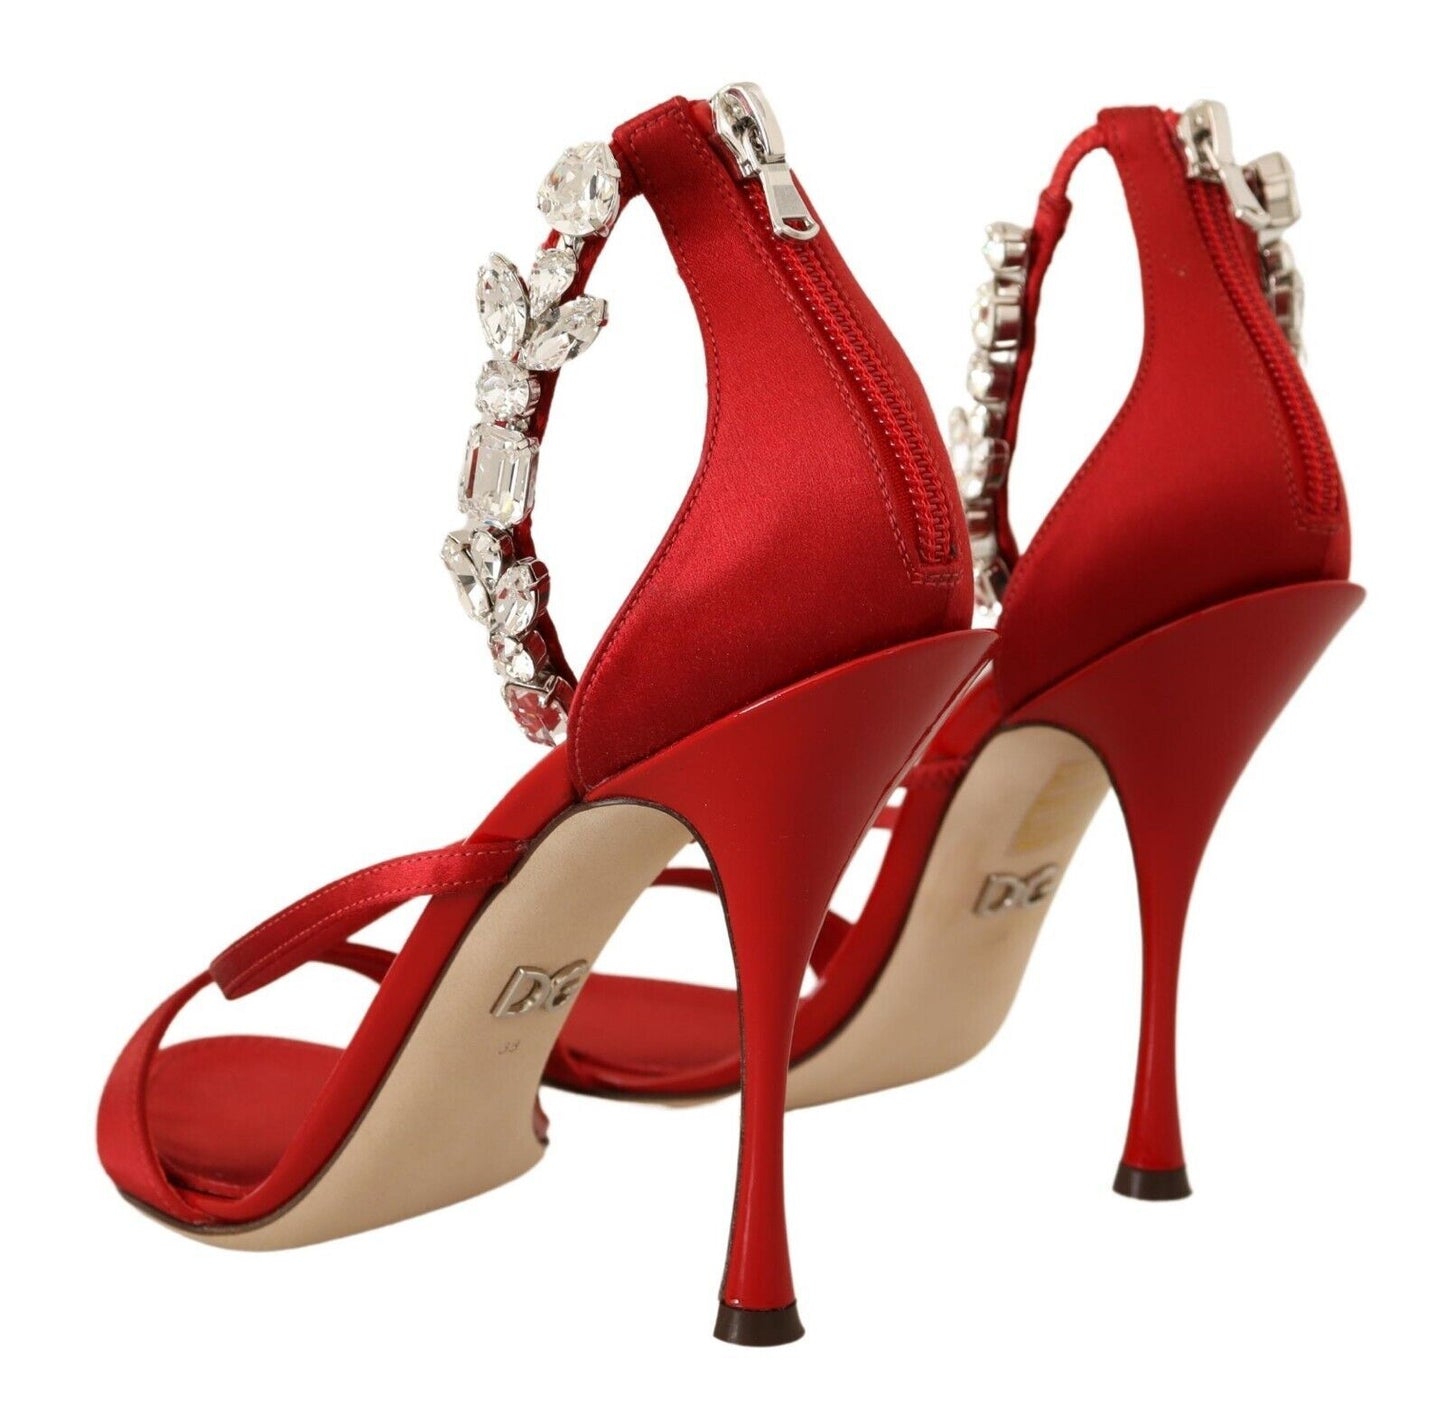 Dolce & Gabbana Red Crystal-Embellished Heel Sandals